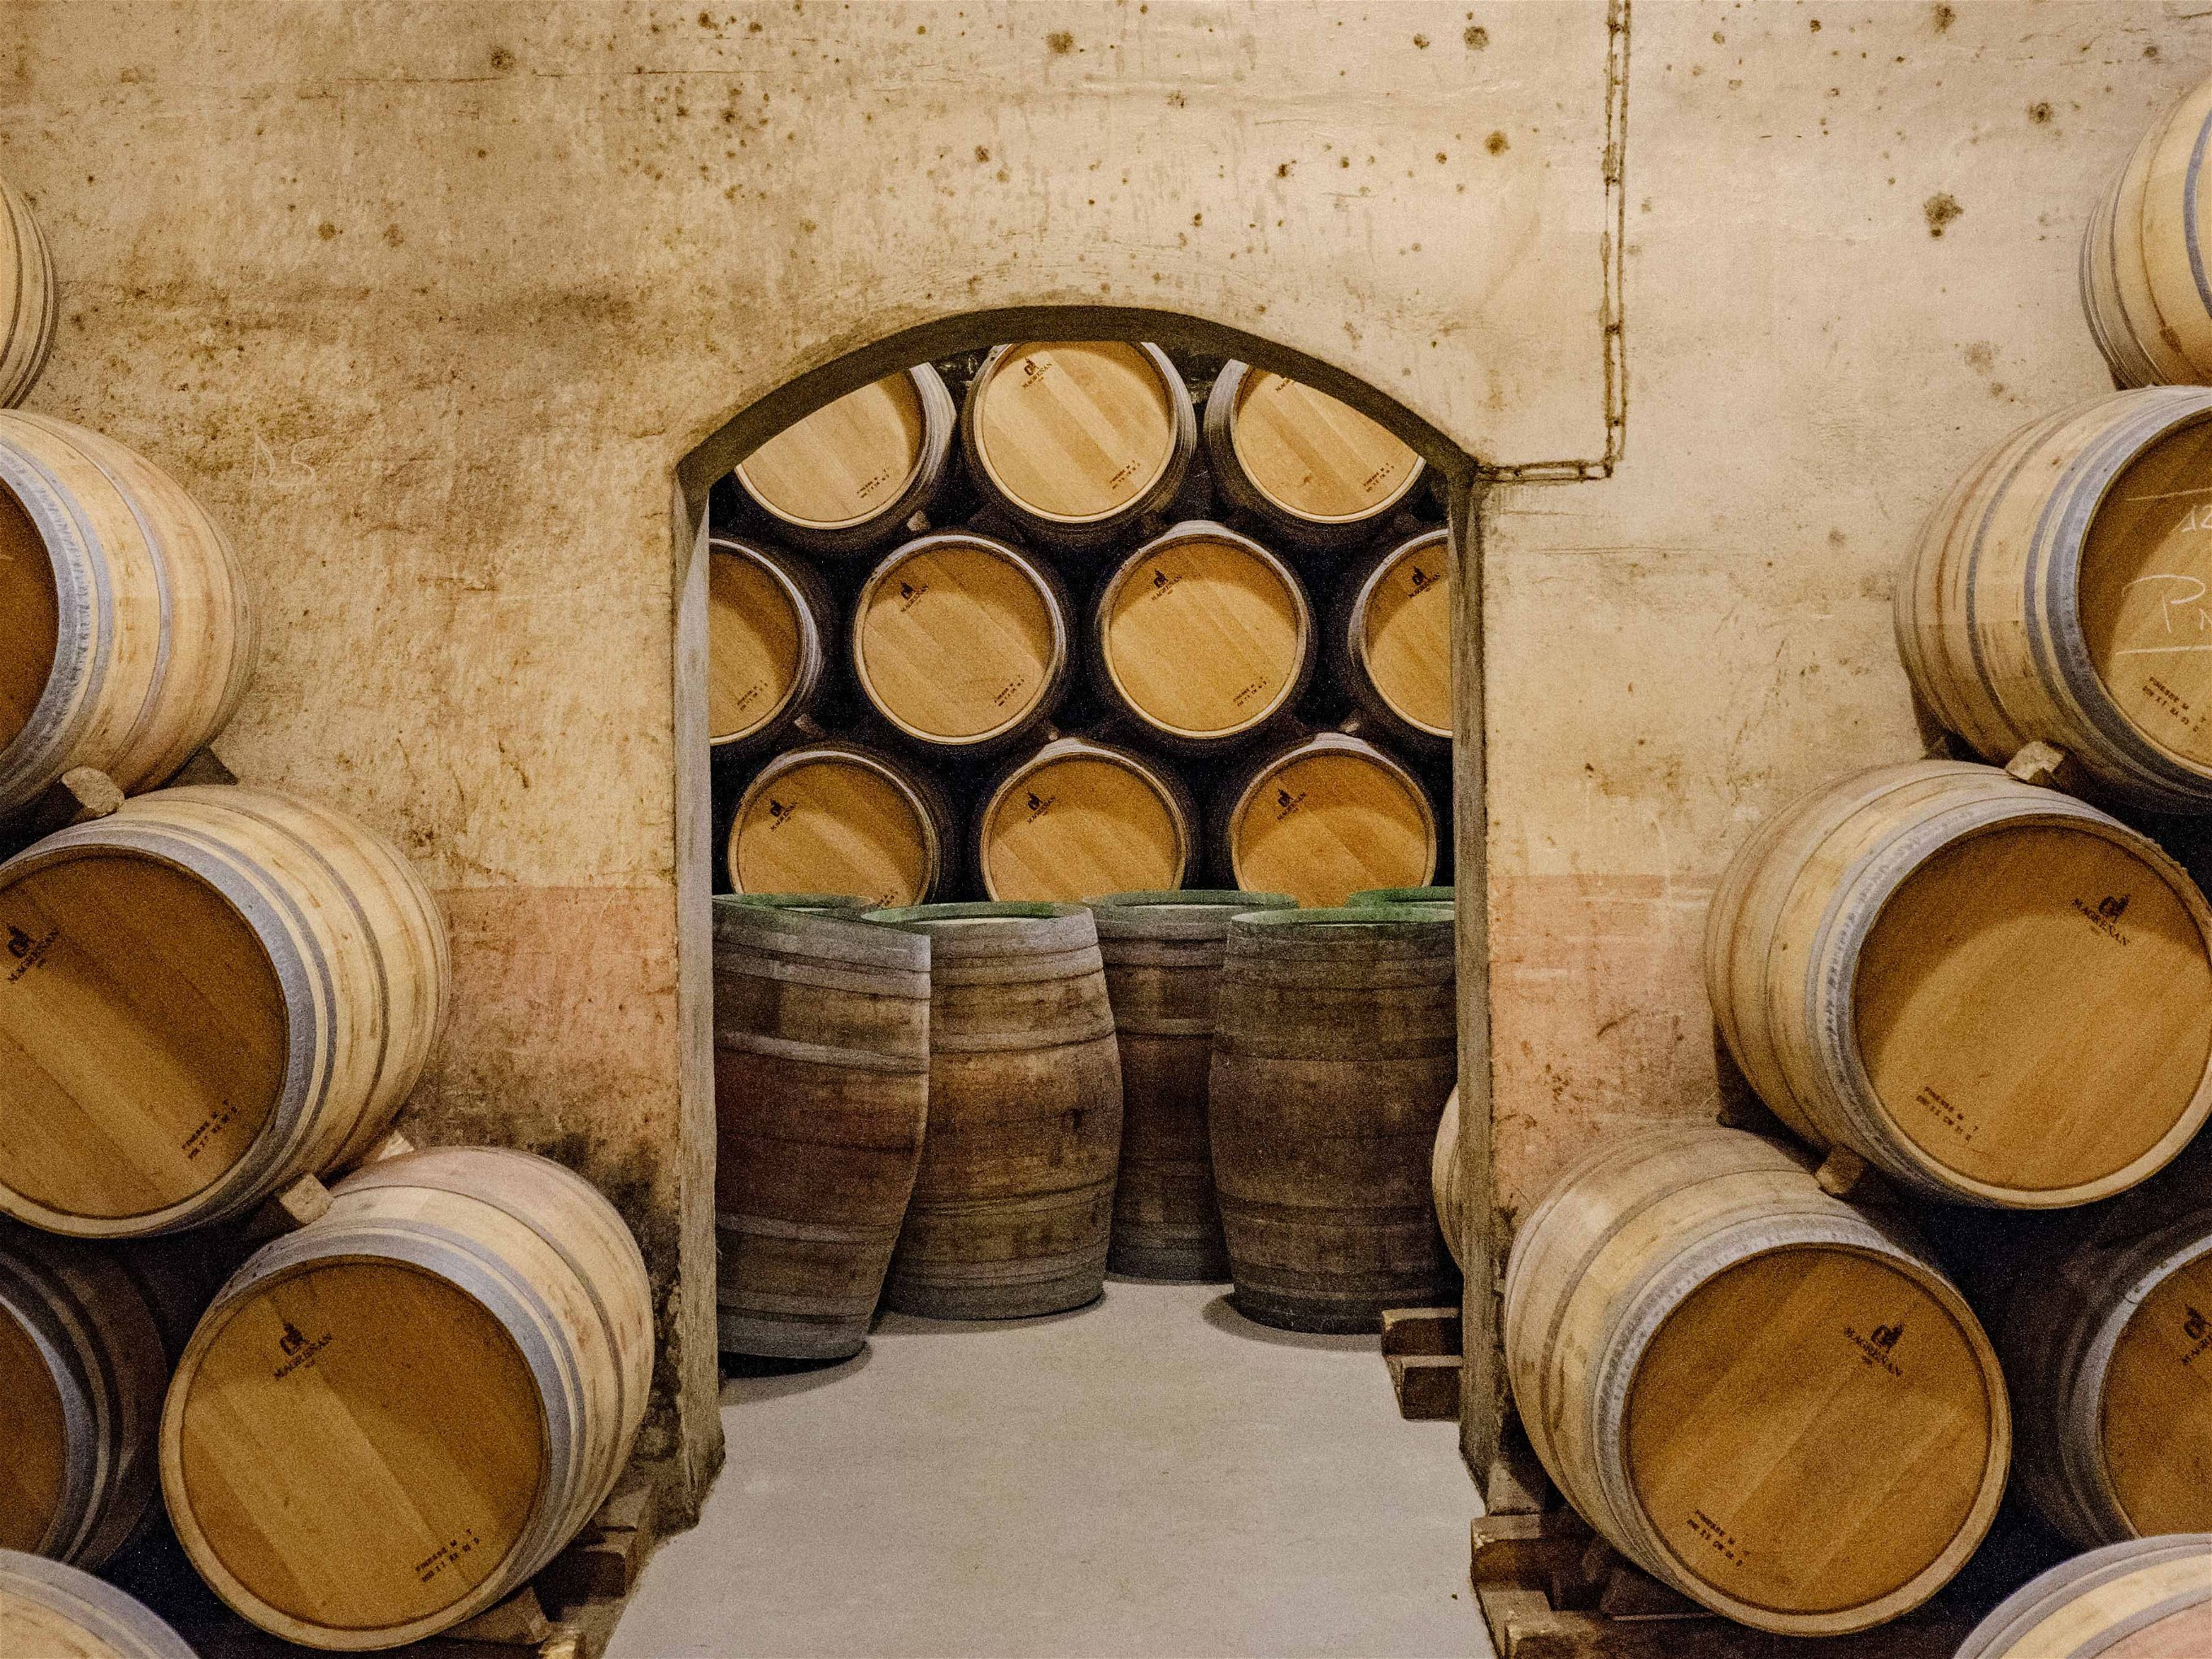 Immer mehr kleinere Projekte in der Rioja stellen nicht mehr die Reifung im Holzfass, sondern den Ausdruck des Terroirs bei ihren Weinen in den Vordergrund.